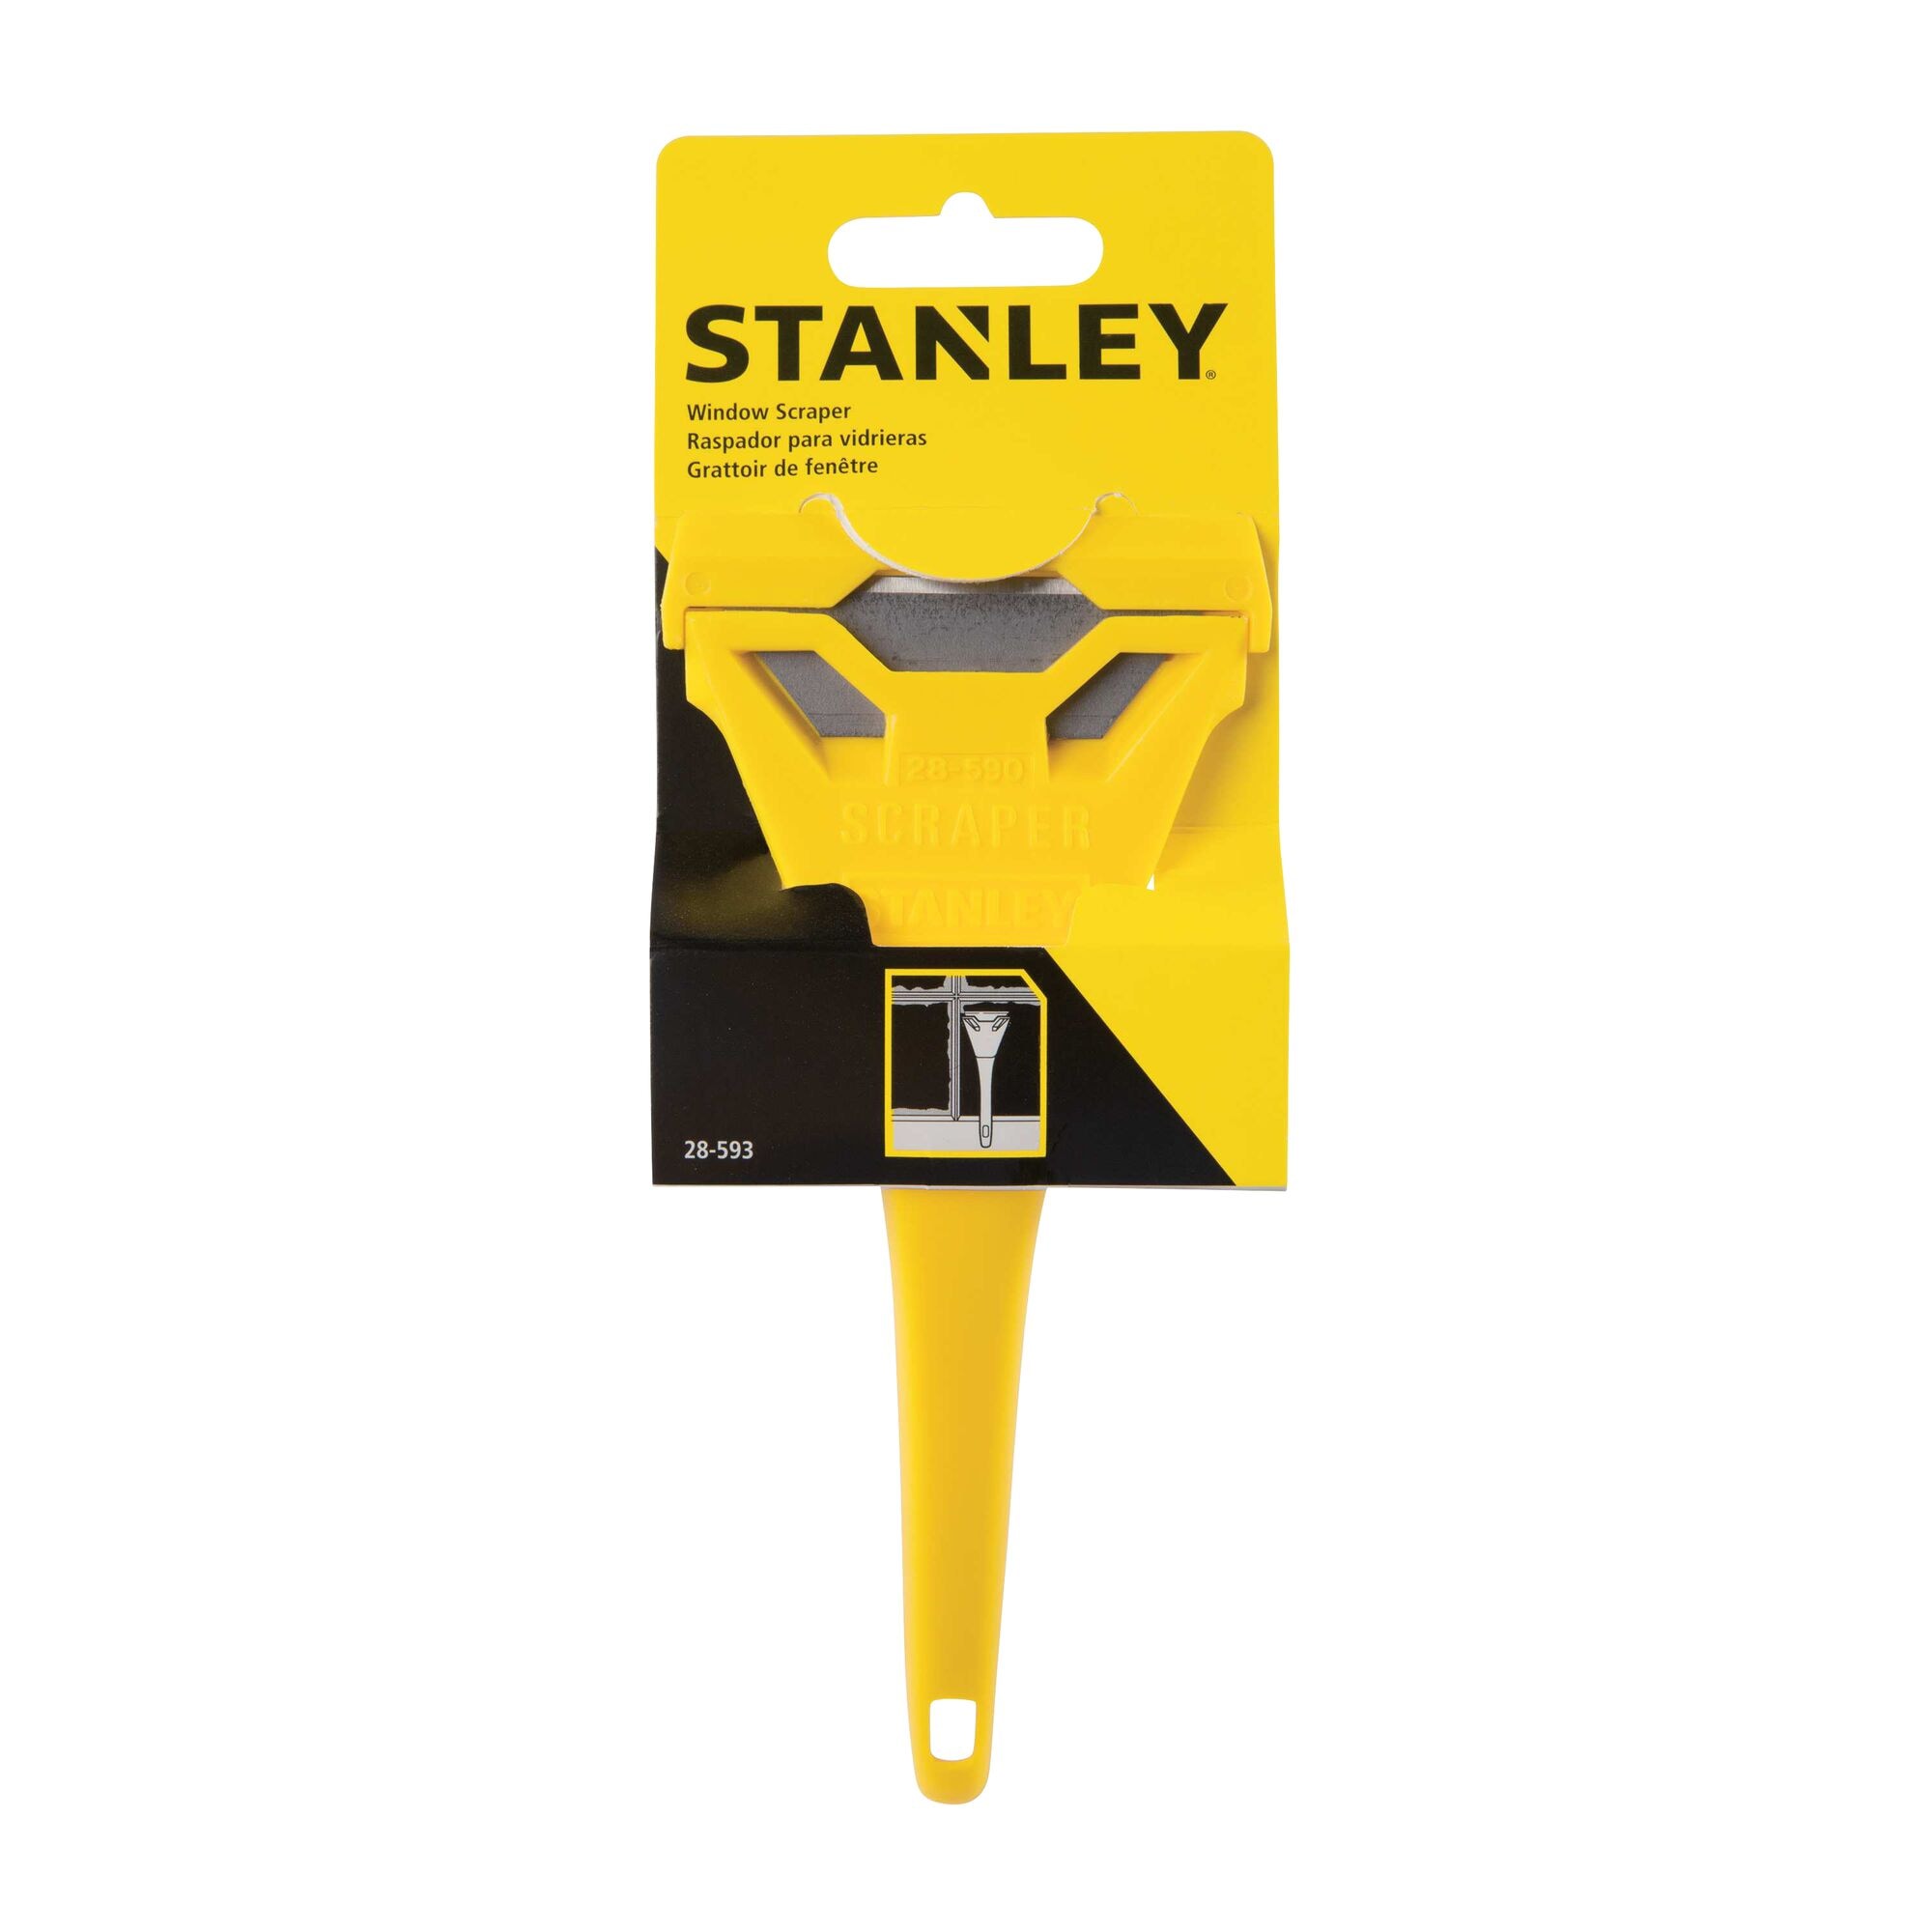 Details about   Stanley 28-593 Window Scraper PLUS 1 Blade 